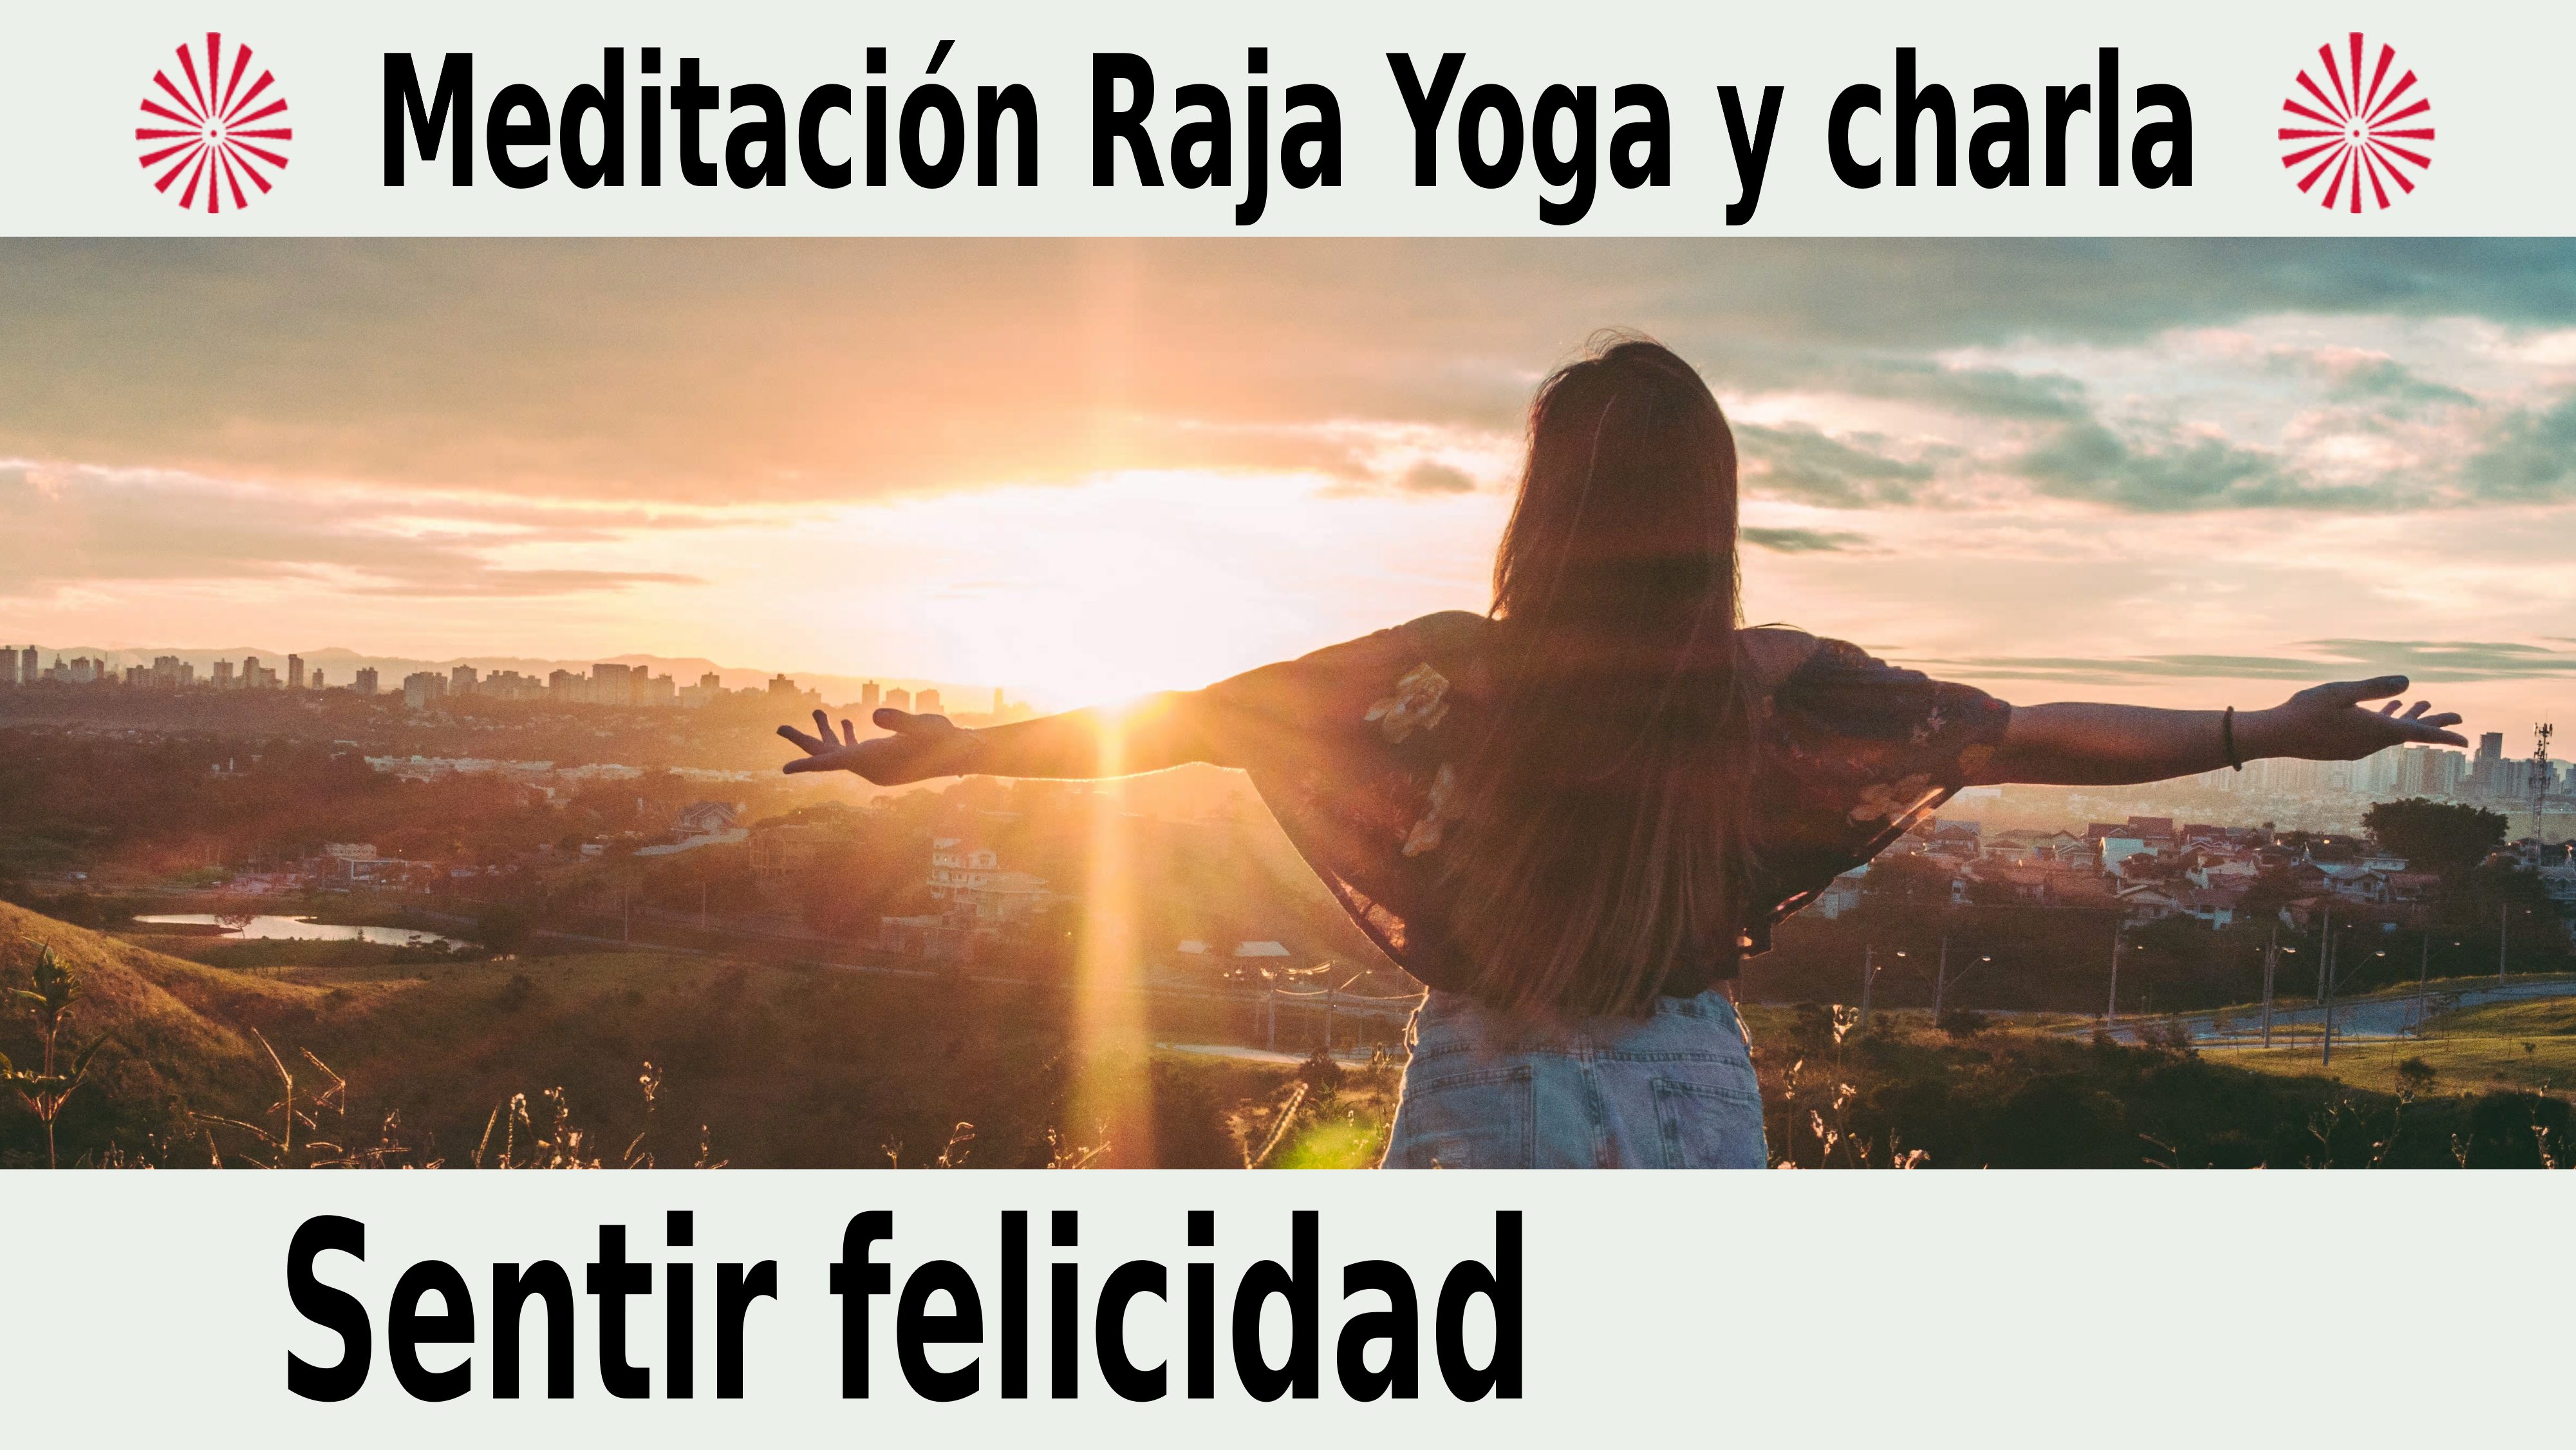 Meditación Raja Yoga y charla: Sentir felicidad (22 Diciembre 2020) On-line desde Canarias